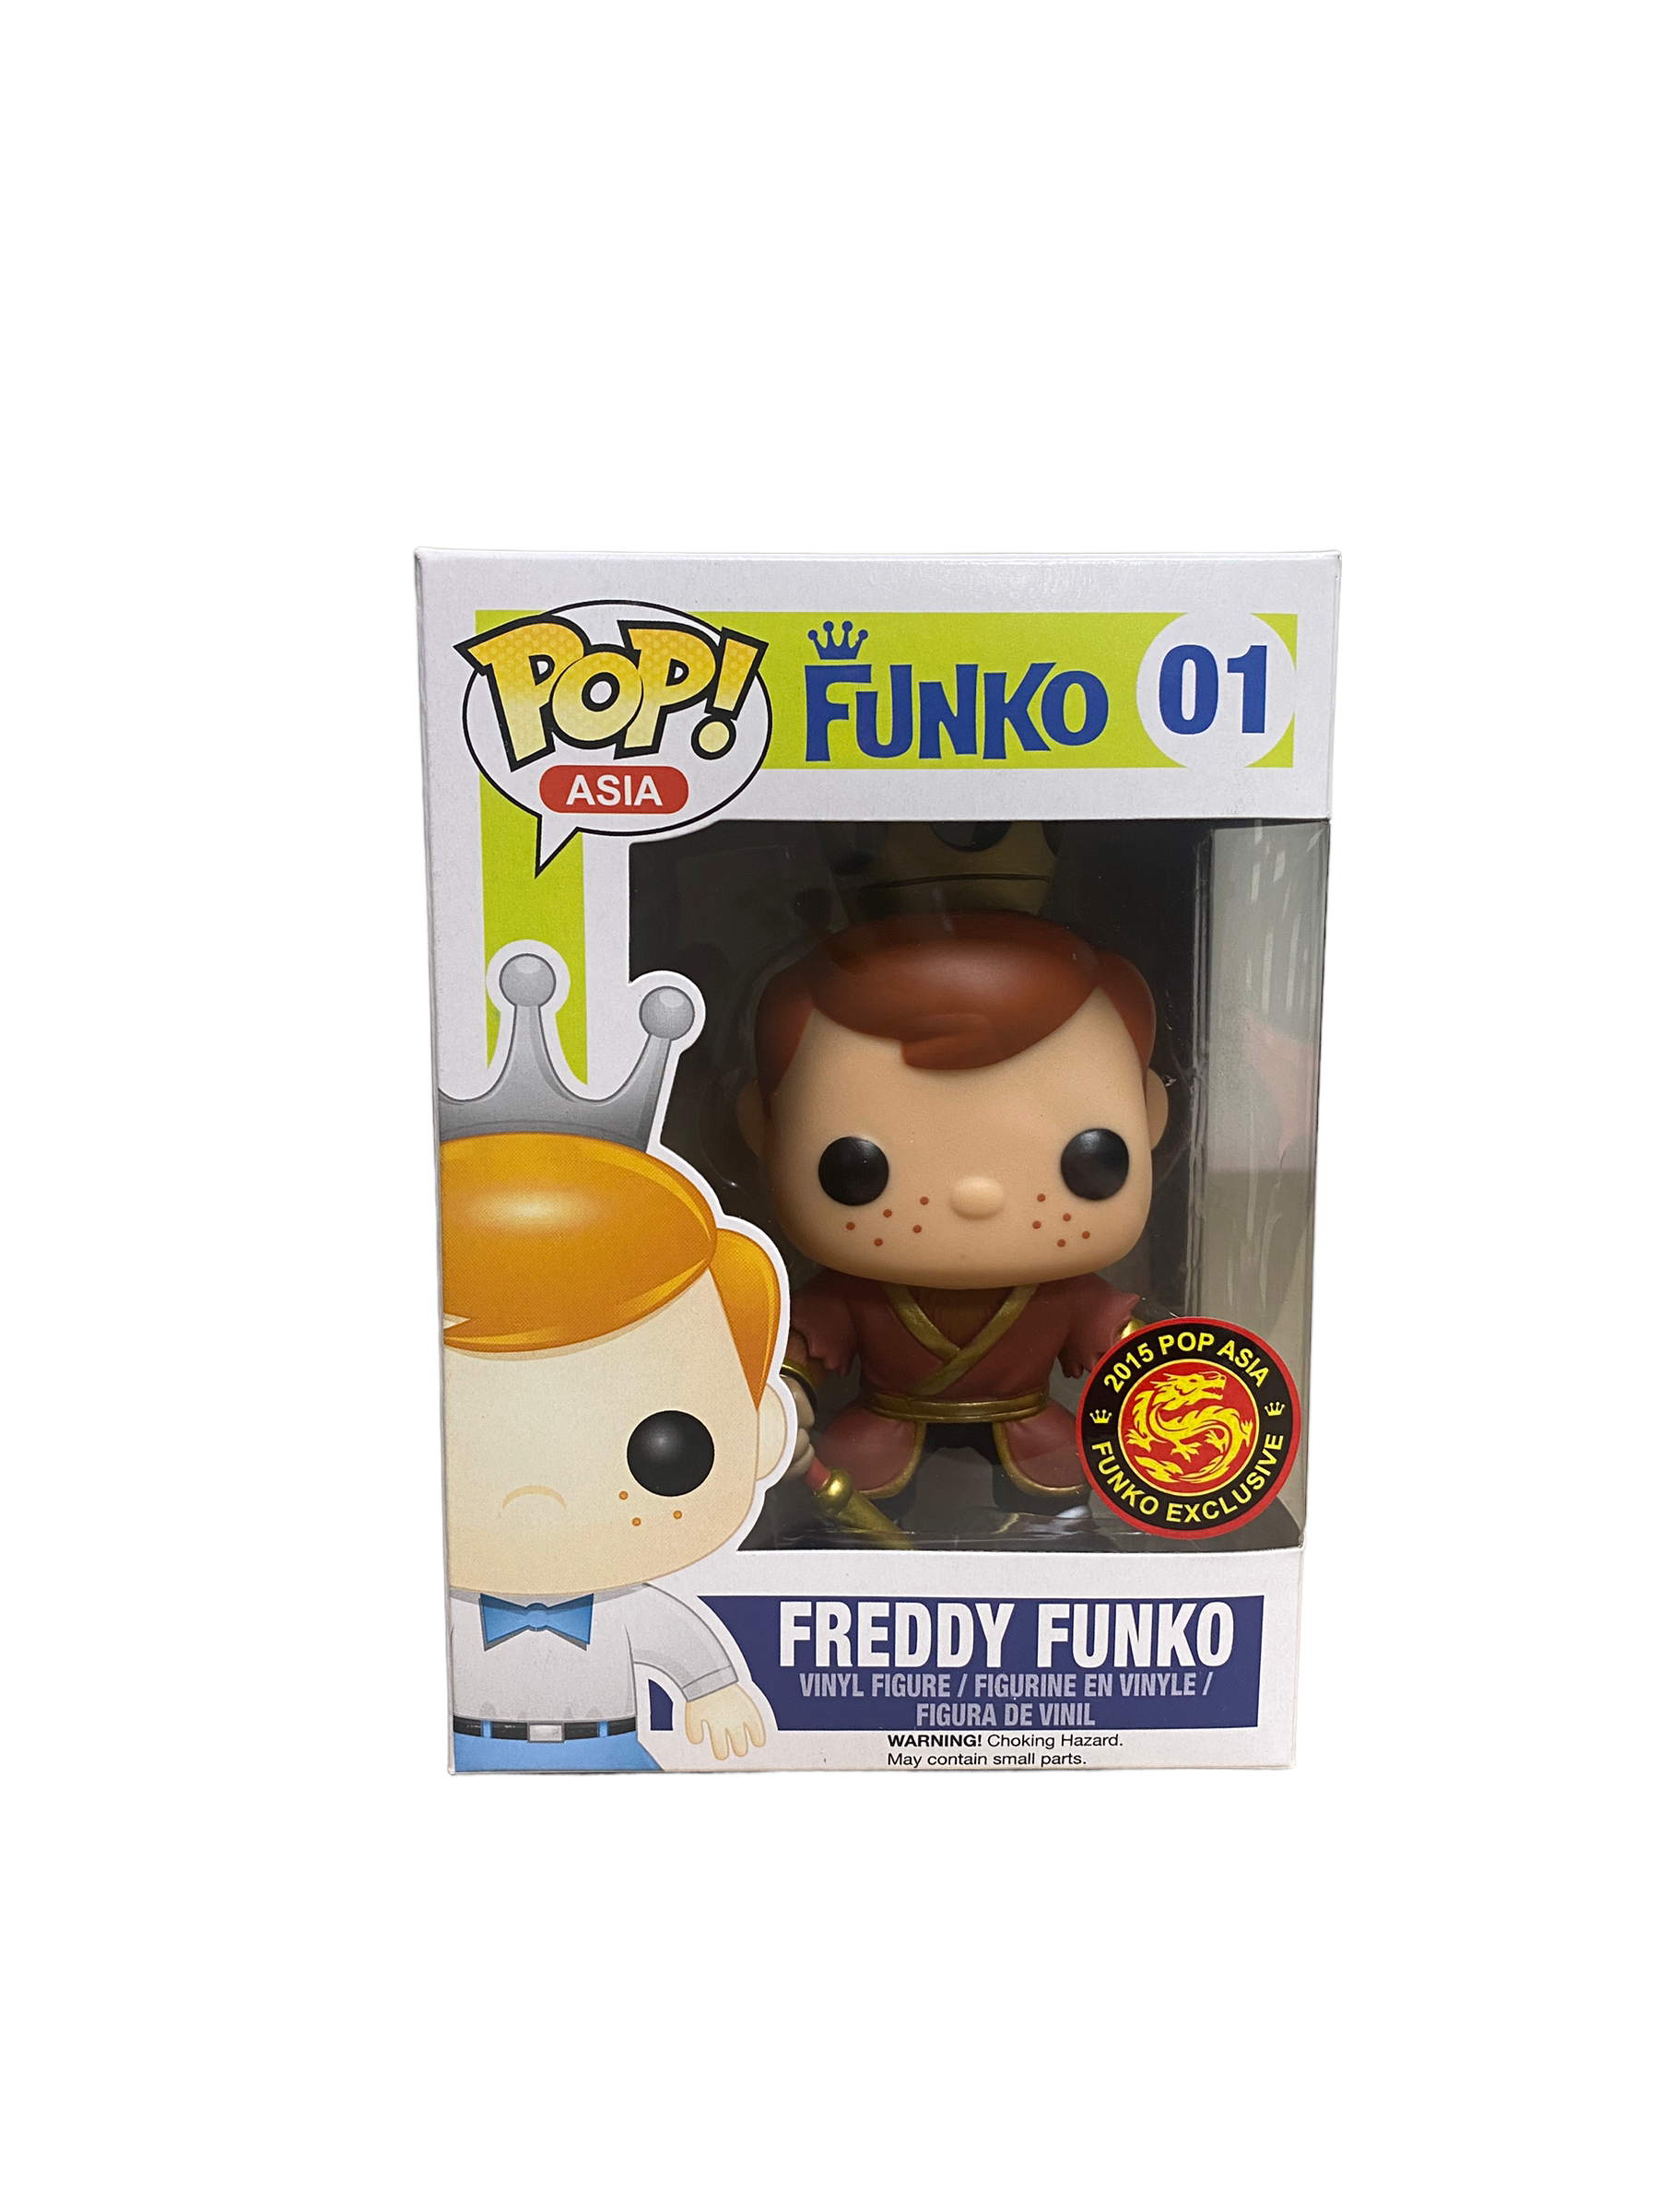 Freddy Funko As Monkey King #01 Funko Pop! - Funko Asia - 2015 Pop Asia Exclusive - Condition 8/10